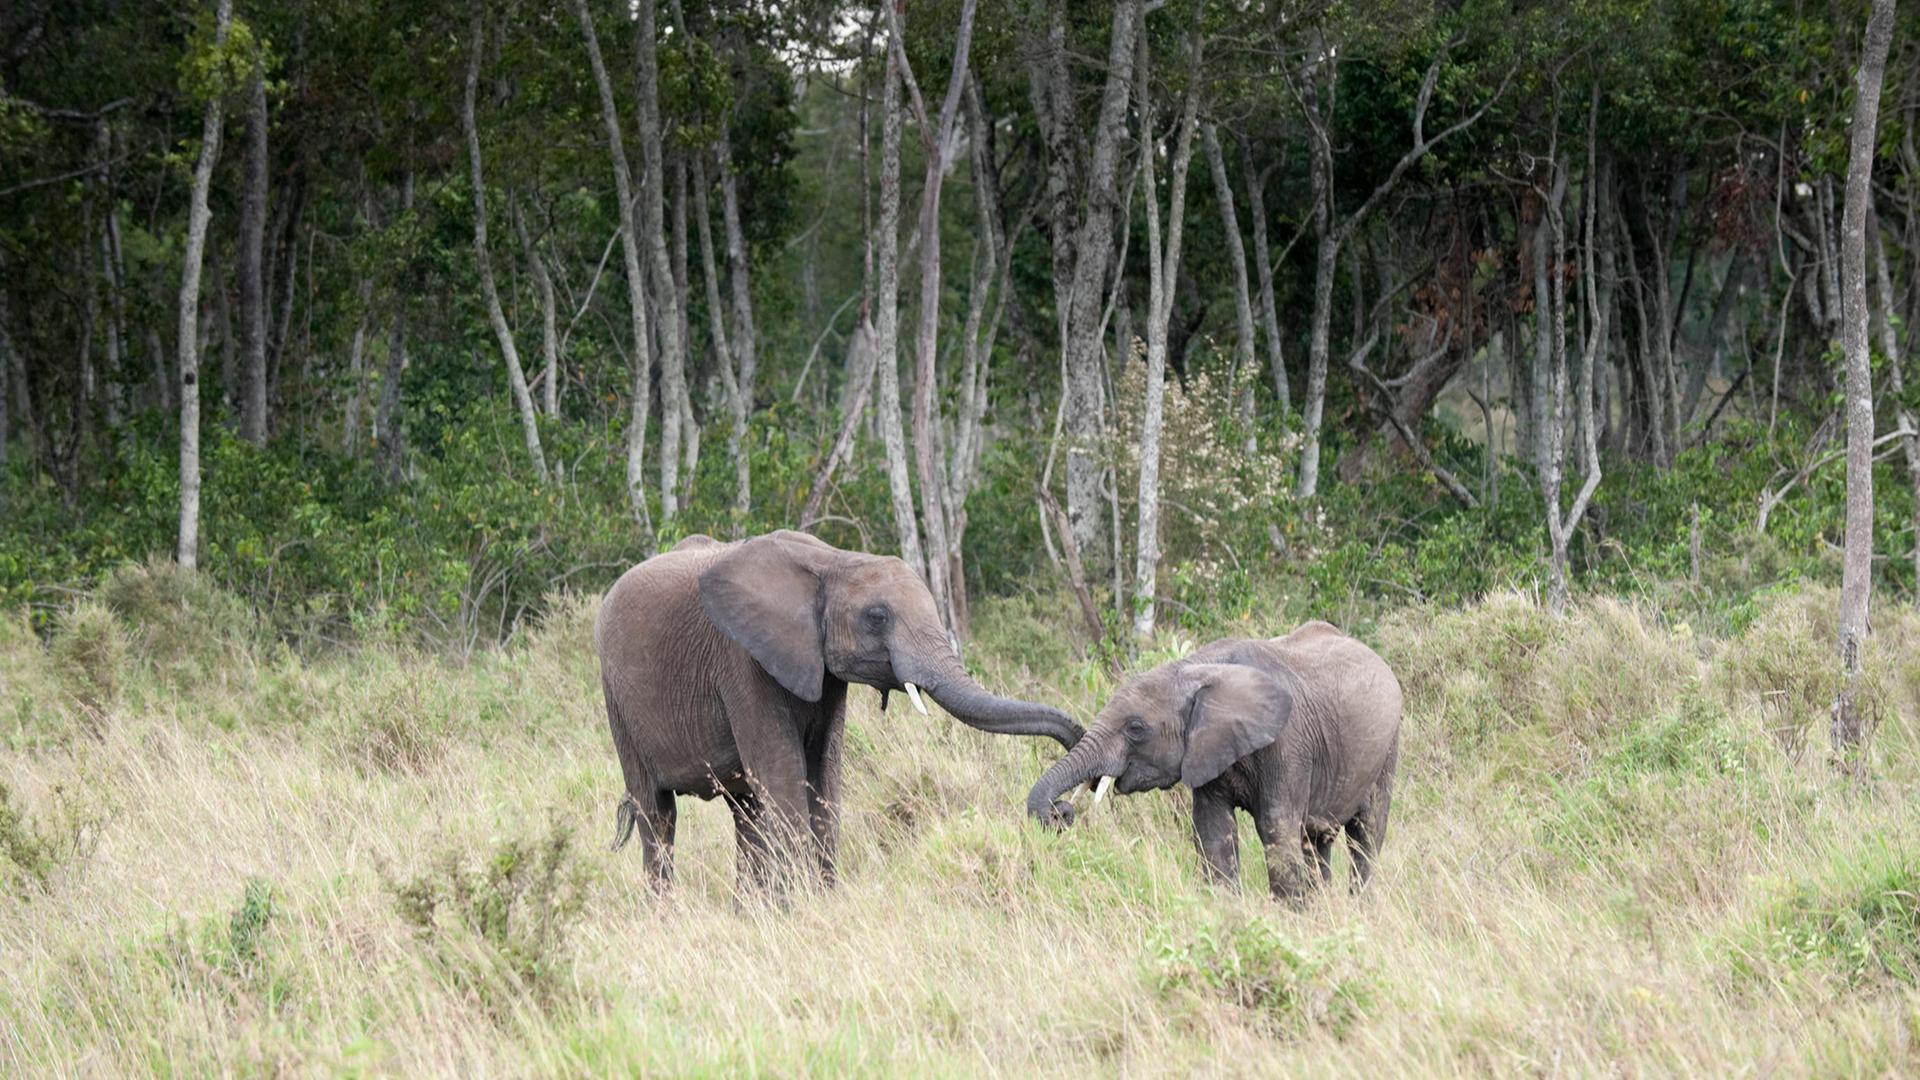 Zwei junge afrikanische Elefanten, die sich gegenseitig begrüßen, Masai Mara National Reserve, Kenya.